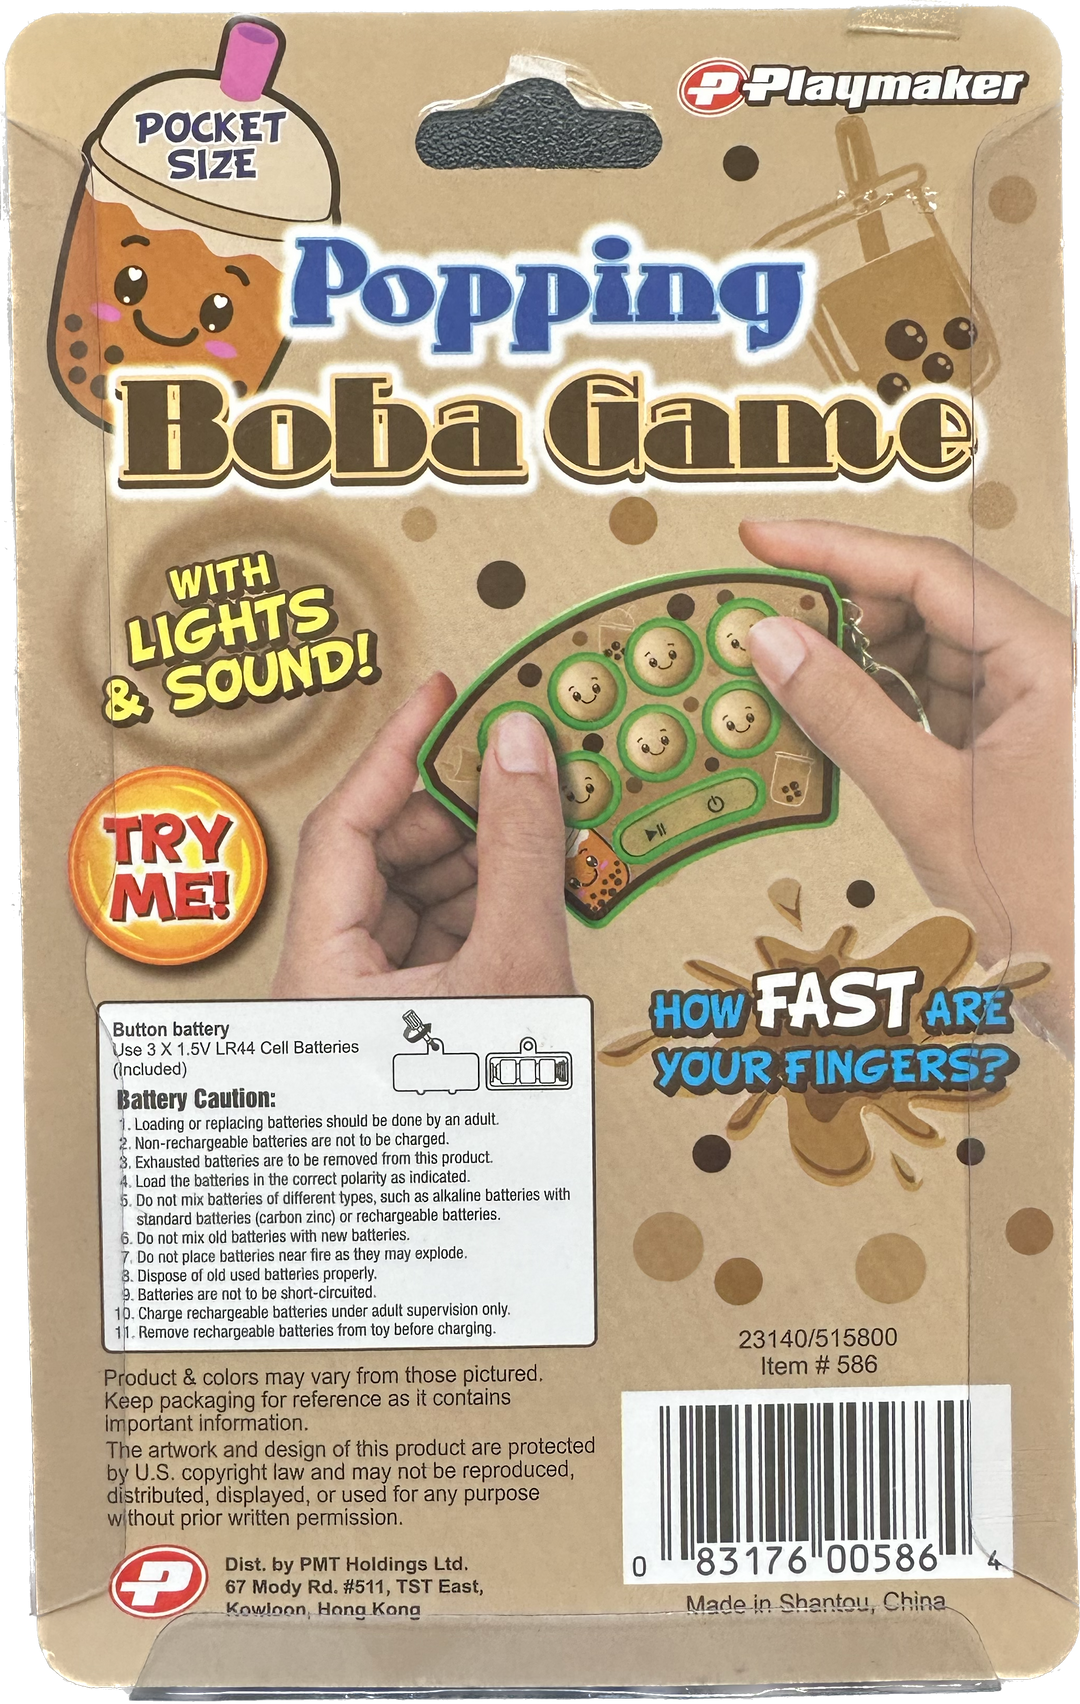 Popping Boba Game